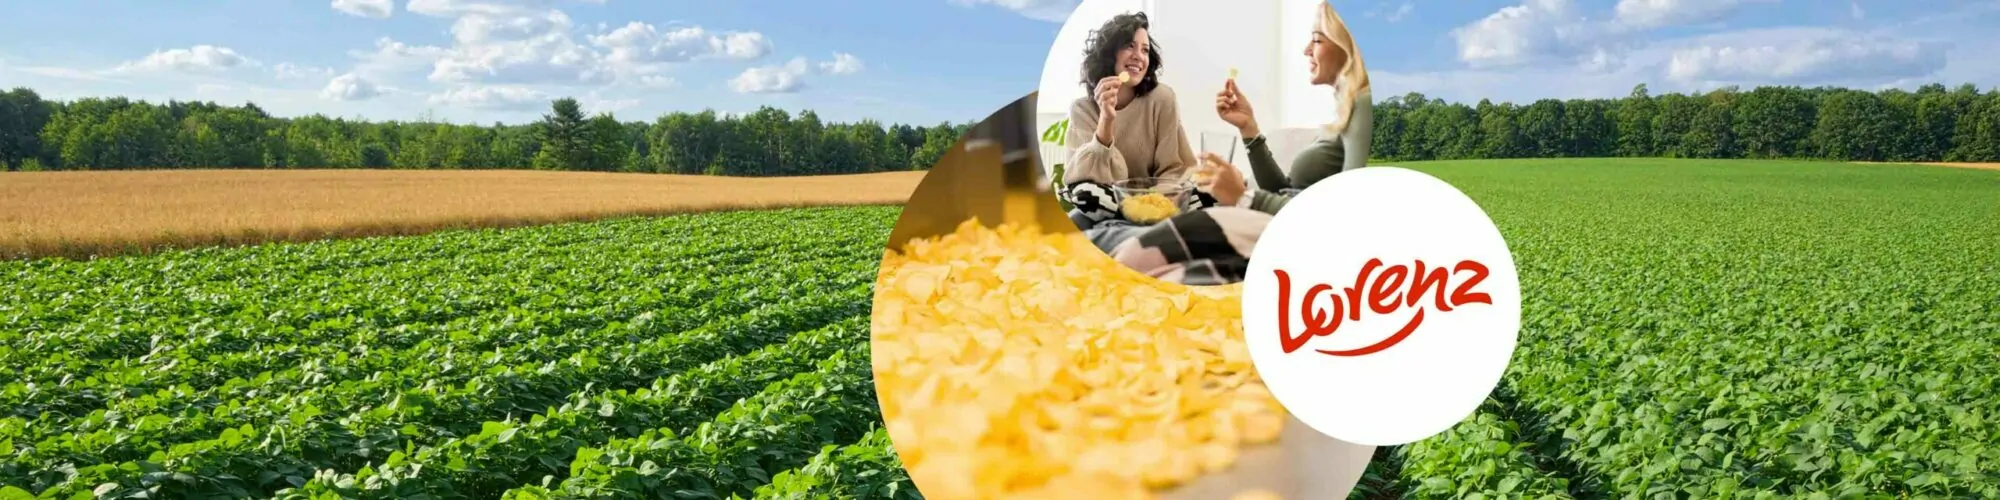 Bild von zwei Frauen, die Chips essen, daneben das Lorenz Logo und Kartoffelchips in der Produktion